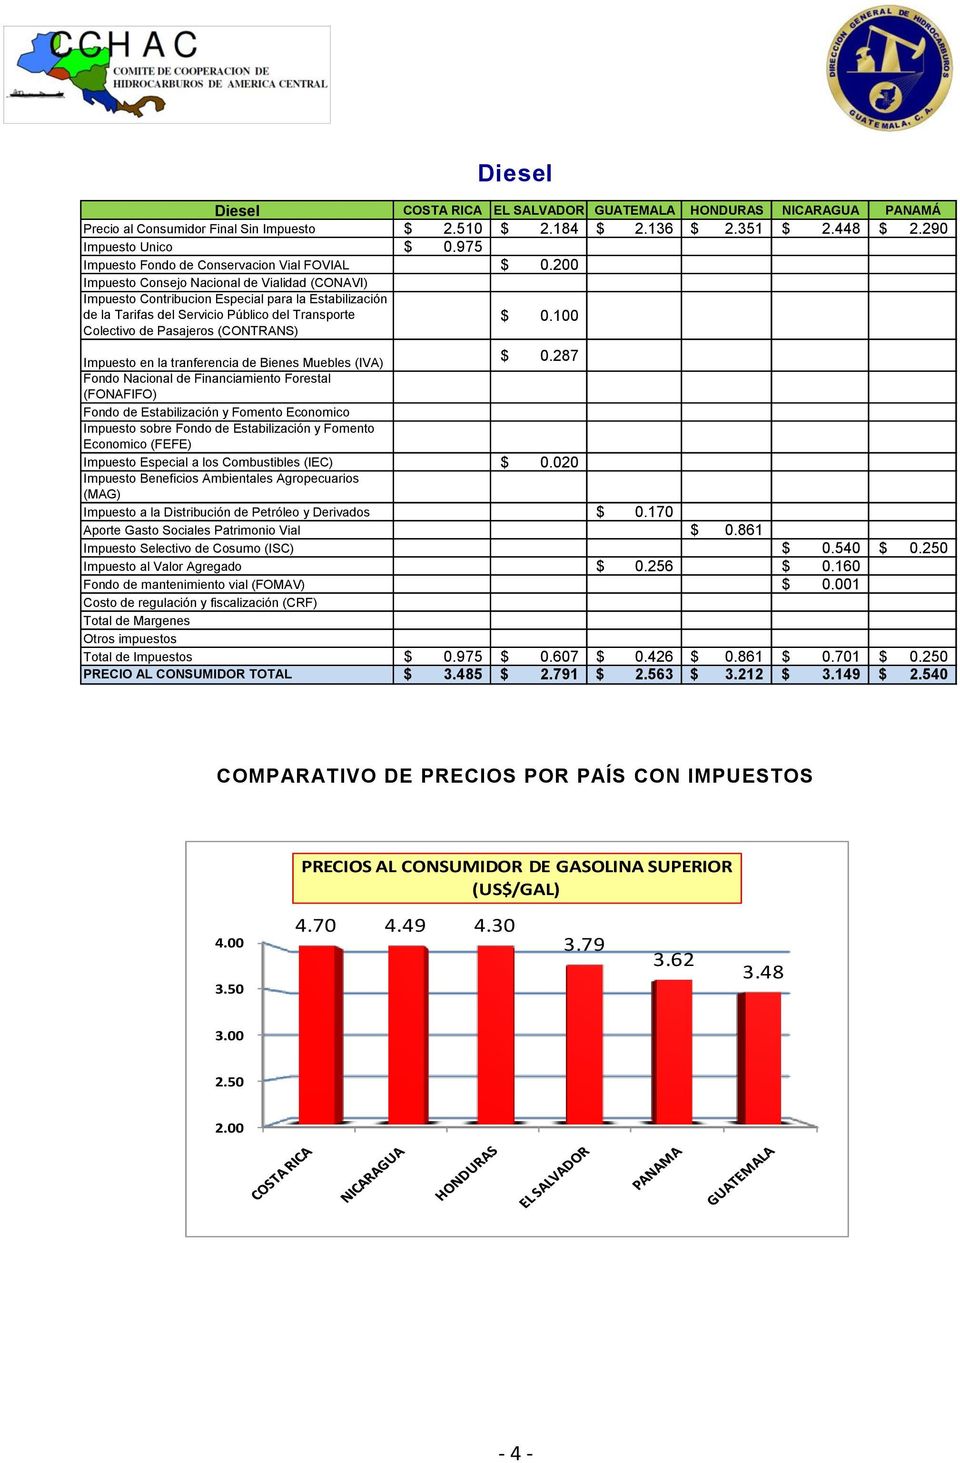 200 Impuesto Consejo Nacional de Vialidad (CONAVI) Impuesto Contribucion Especial para la Estabilización de la Tarifas del Servicio Público del Transporte Colectivo de Pasajeros (CONTRANS) $ 0.